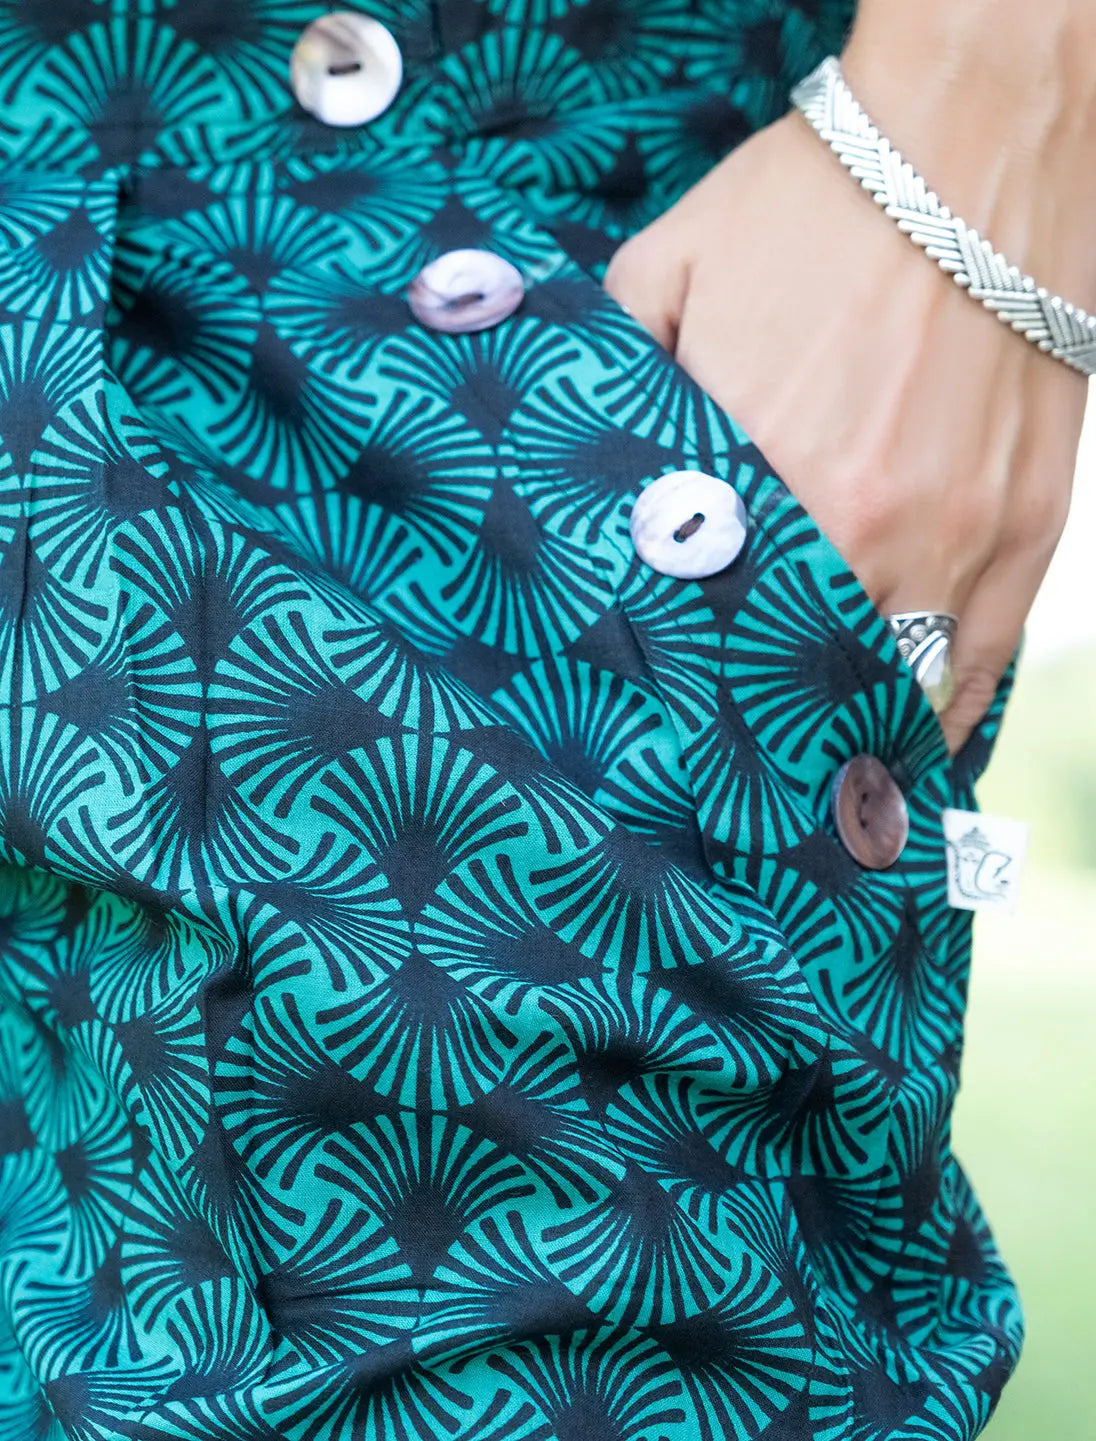 Pantalone donna Kunda a sigaretta retro elasticizzato - Geometrico verde acqua Namastemood